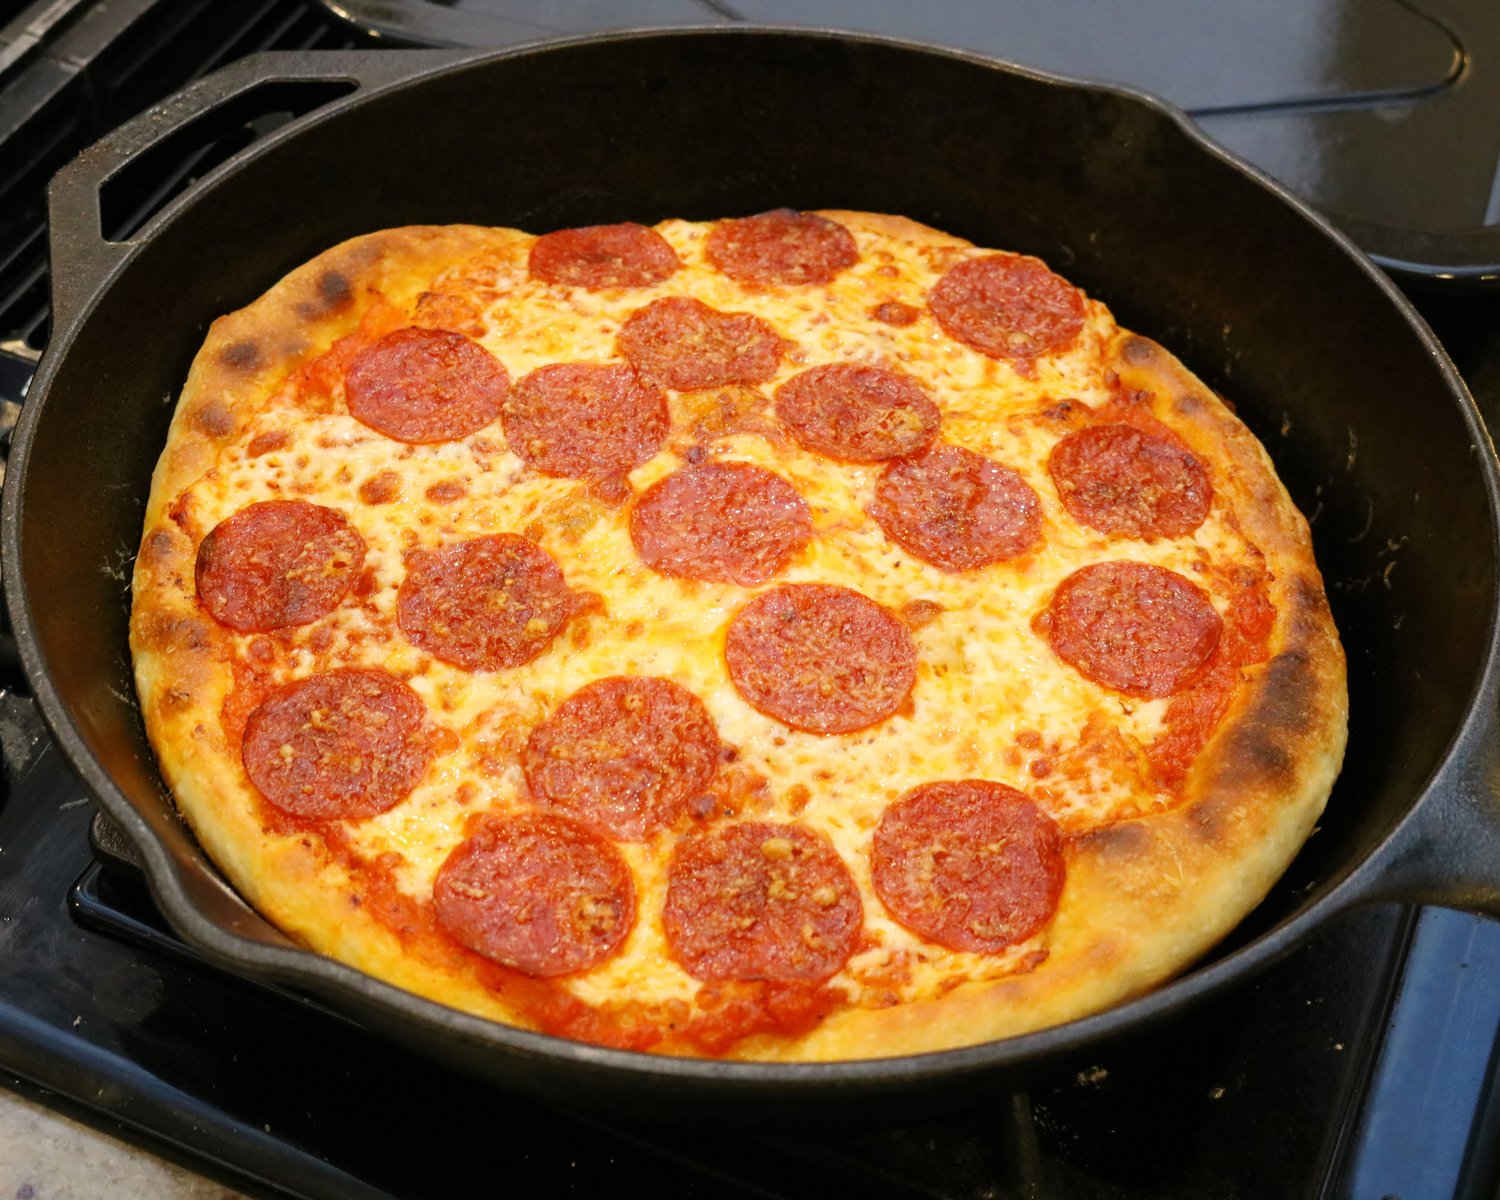 https://images.squarespace-cdn.com/content/v1/5ac8394baa49a16d3b6d71b3/1552002381061-U8038OZ4L9HOBTVFHEAY/Cast+Iron+Pizza+-+Pepperoni.JPG?format=1500w